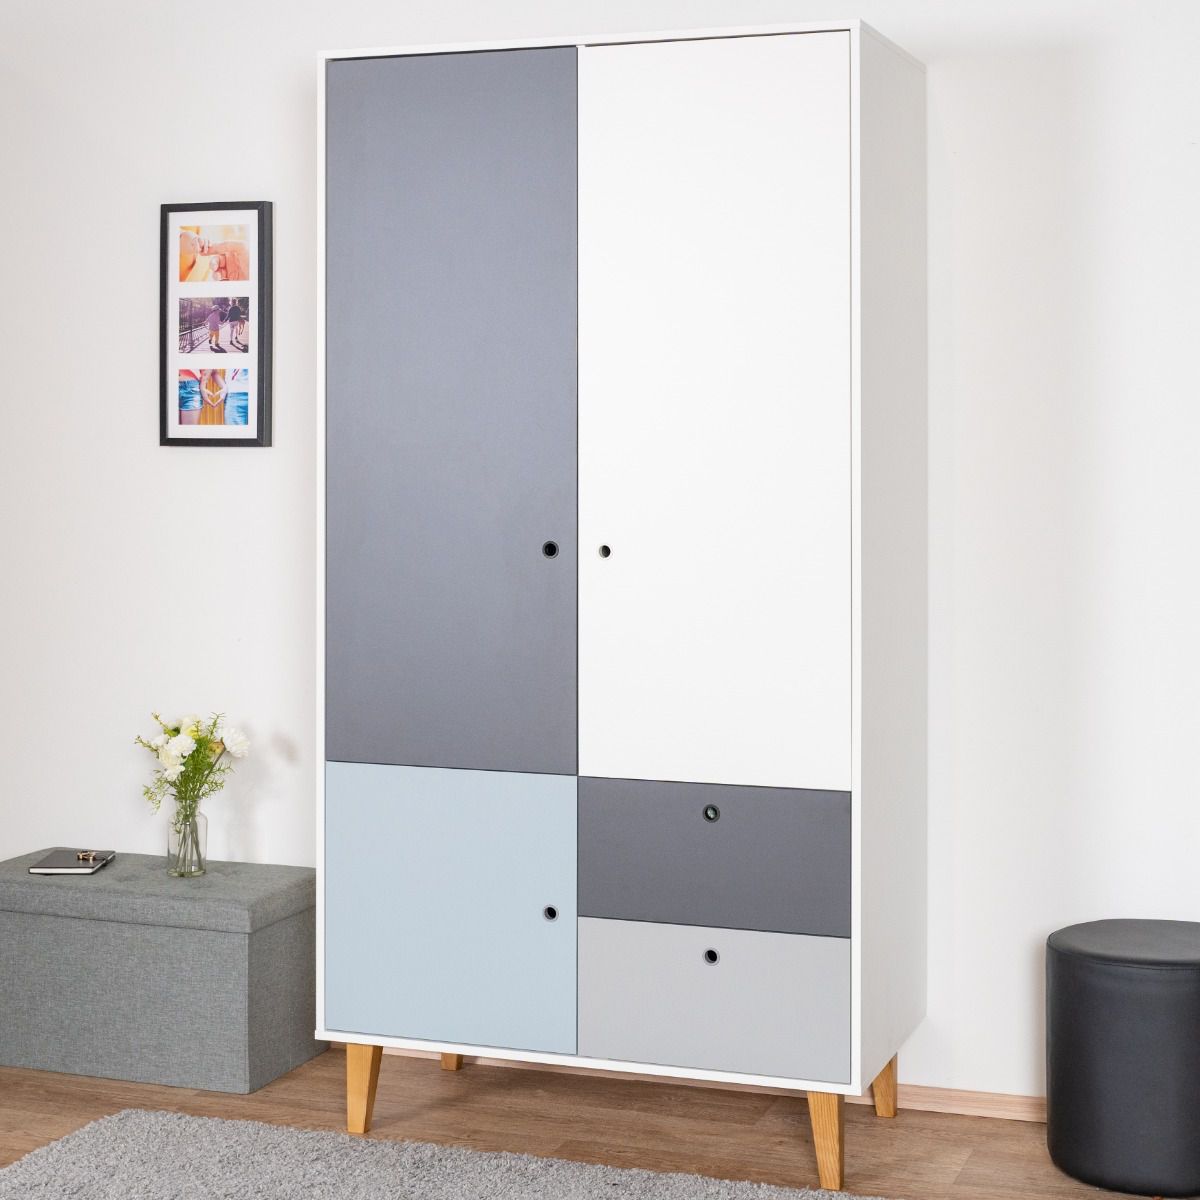 Chambre d'adolescents - armoire à portes battantes / armoire Syrina 04, couleur : blanc / gris / bleu - Dimensions : 202 x 104 x 55 cm (h x l x p)